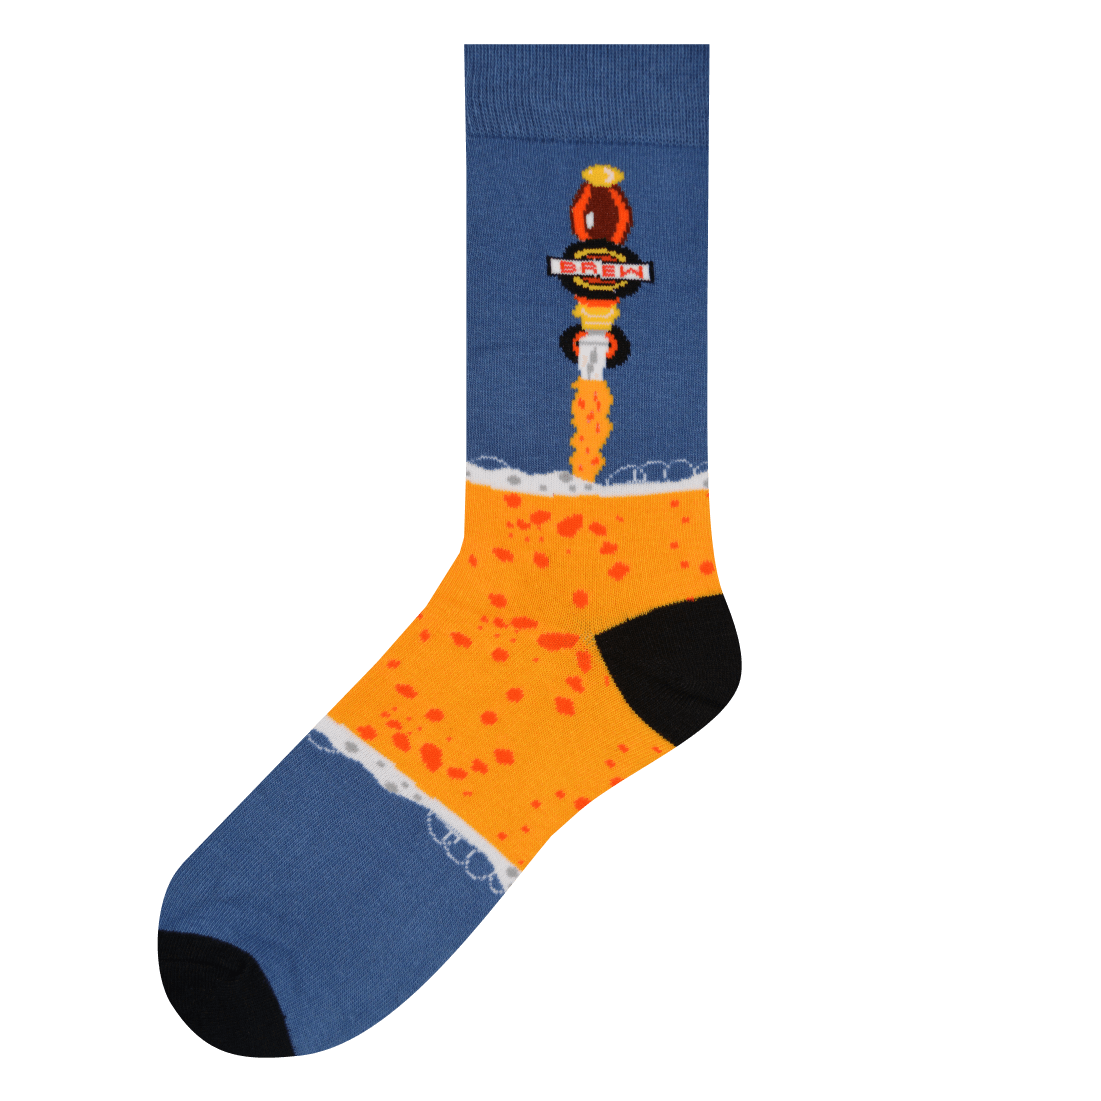 Medias Locas calcetines divertidos de diseño desigual cerveza Freaky Socks. Medias disparejas